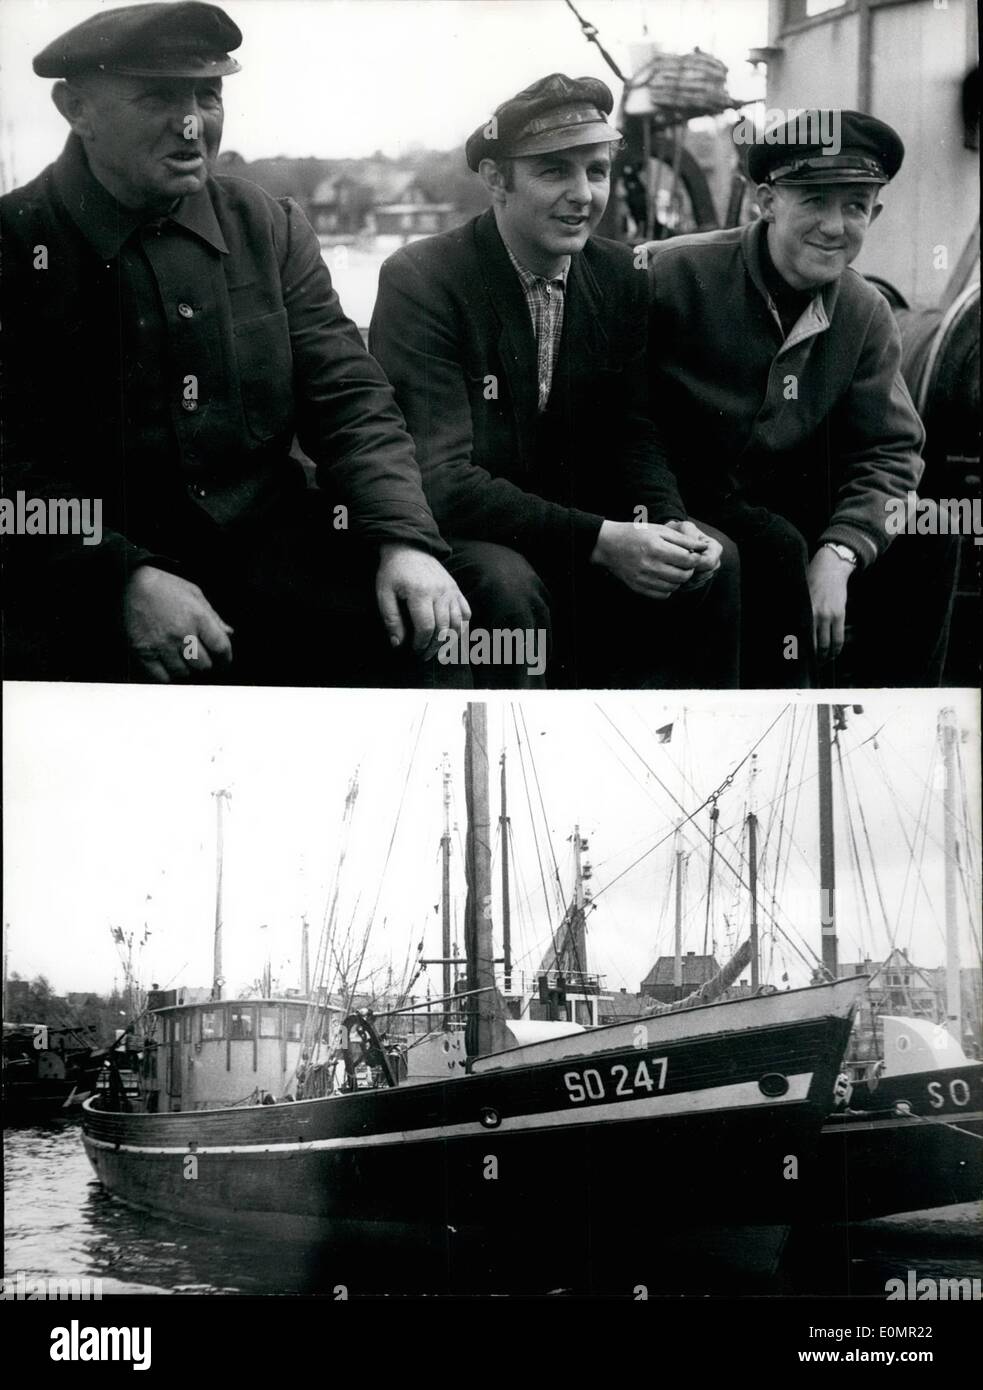 Mai 05, 1956 - Français Ambay payé 1000 Rubel pour pêcheur allemand. Deux fisherboats de Kiel/Allemagne ont été capturés par les Soviétiques au large de Memel, sur la côte de East-Prussia. Les bateaux étaient entrés dans la zone de 12 kilomètres-, lorsqu'ils ont été pêcher saumons. Les lames ont été portés vers le port de Memel. Les Soviétiques étaient très sympa et correct, mais ils ont dit aux pêcheurs qu'ils auraient à payer 1000 Rubels. Un câble à l'ambassade allemande à Moscou a été répondu que l'ambassade va payer pour eux Banque D'Images